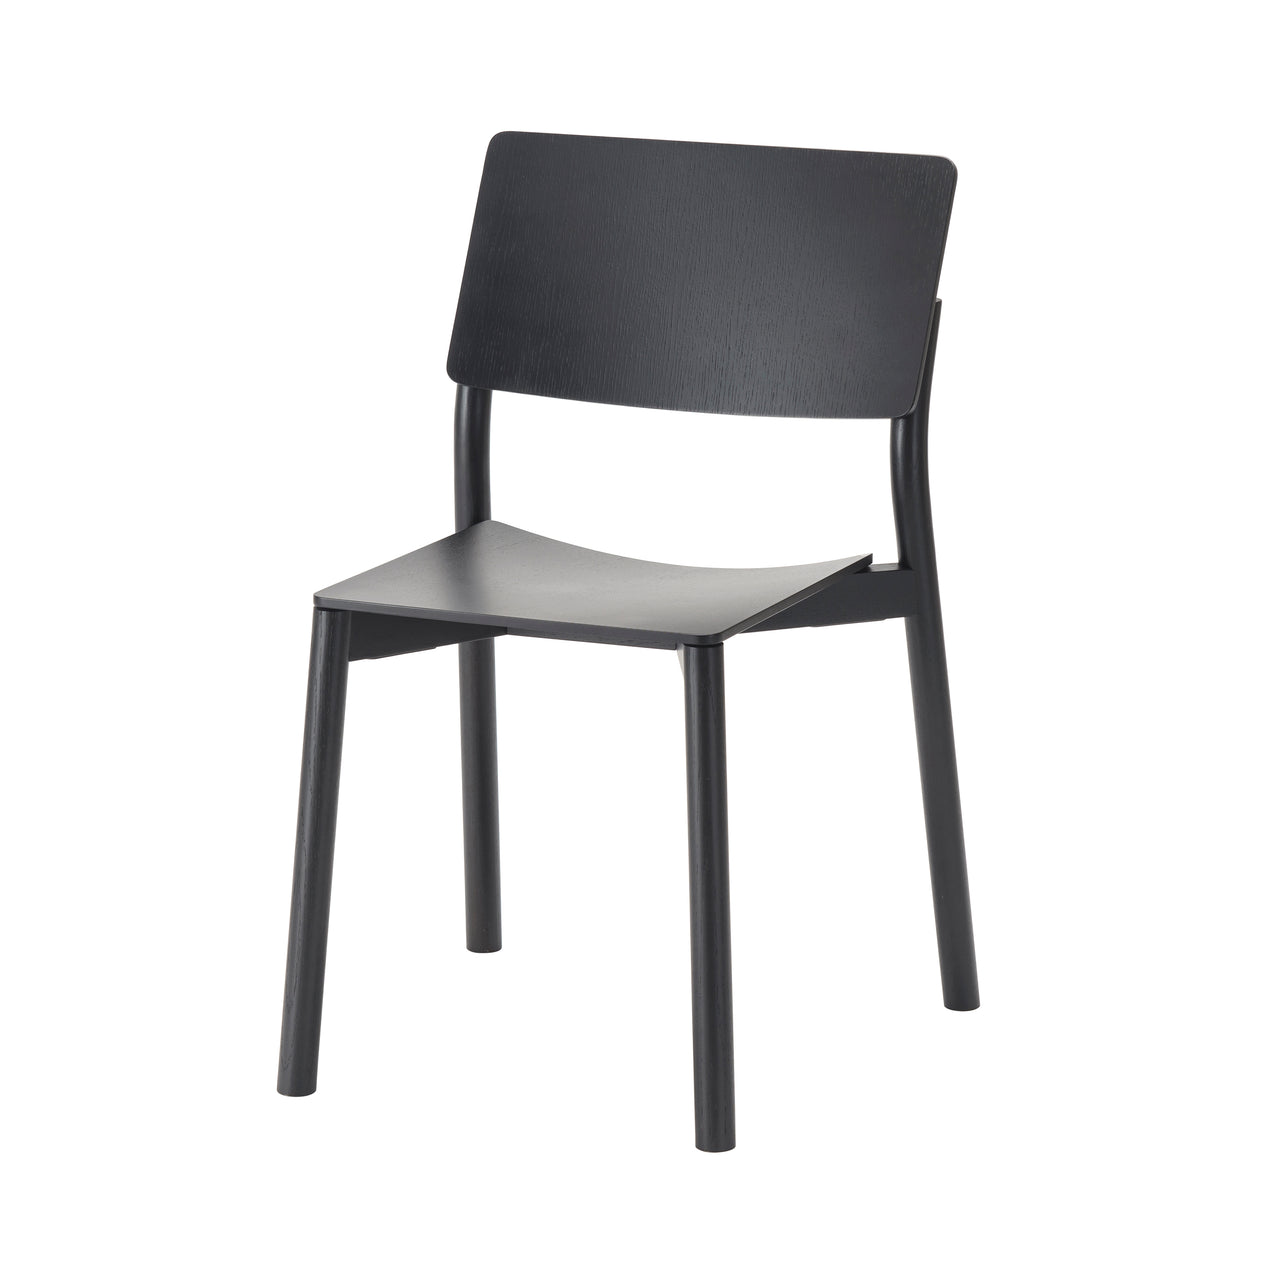 Panorama Chair: Black Oak